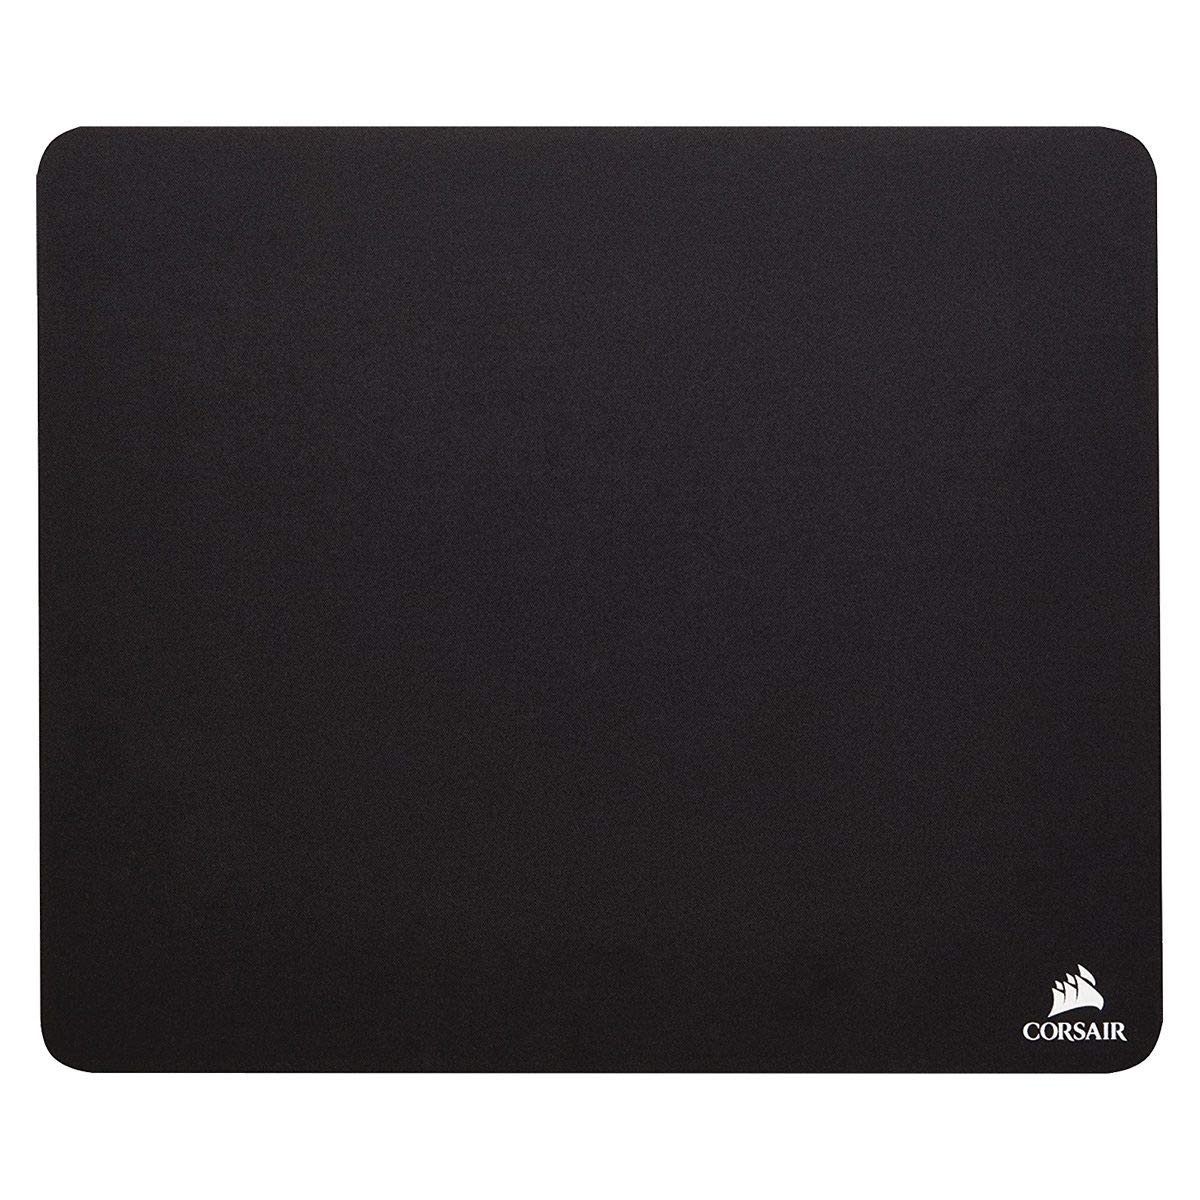 $4.99: Corsair Gaming MM100 Cloth Mouse Pad (12.6" x 10.6")